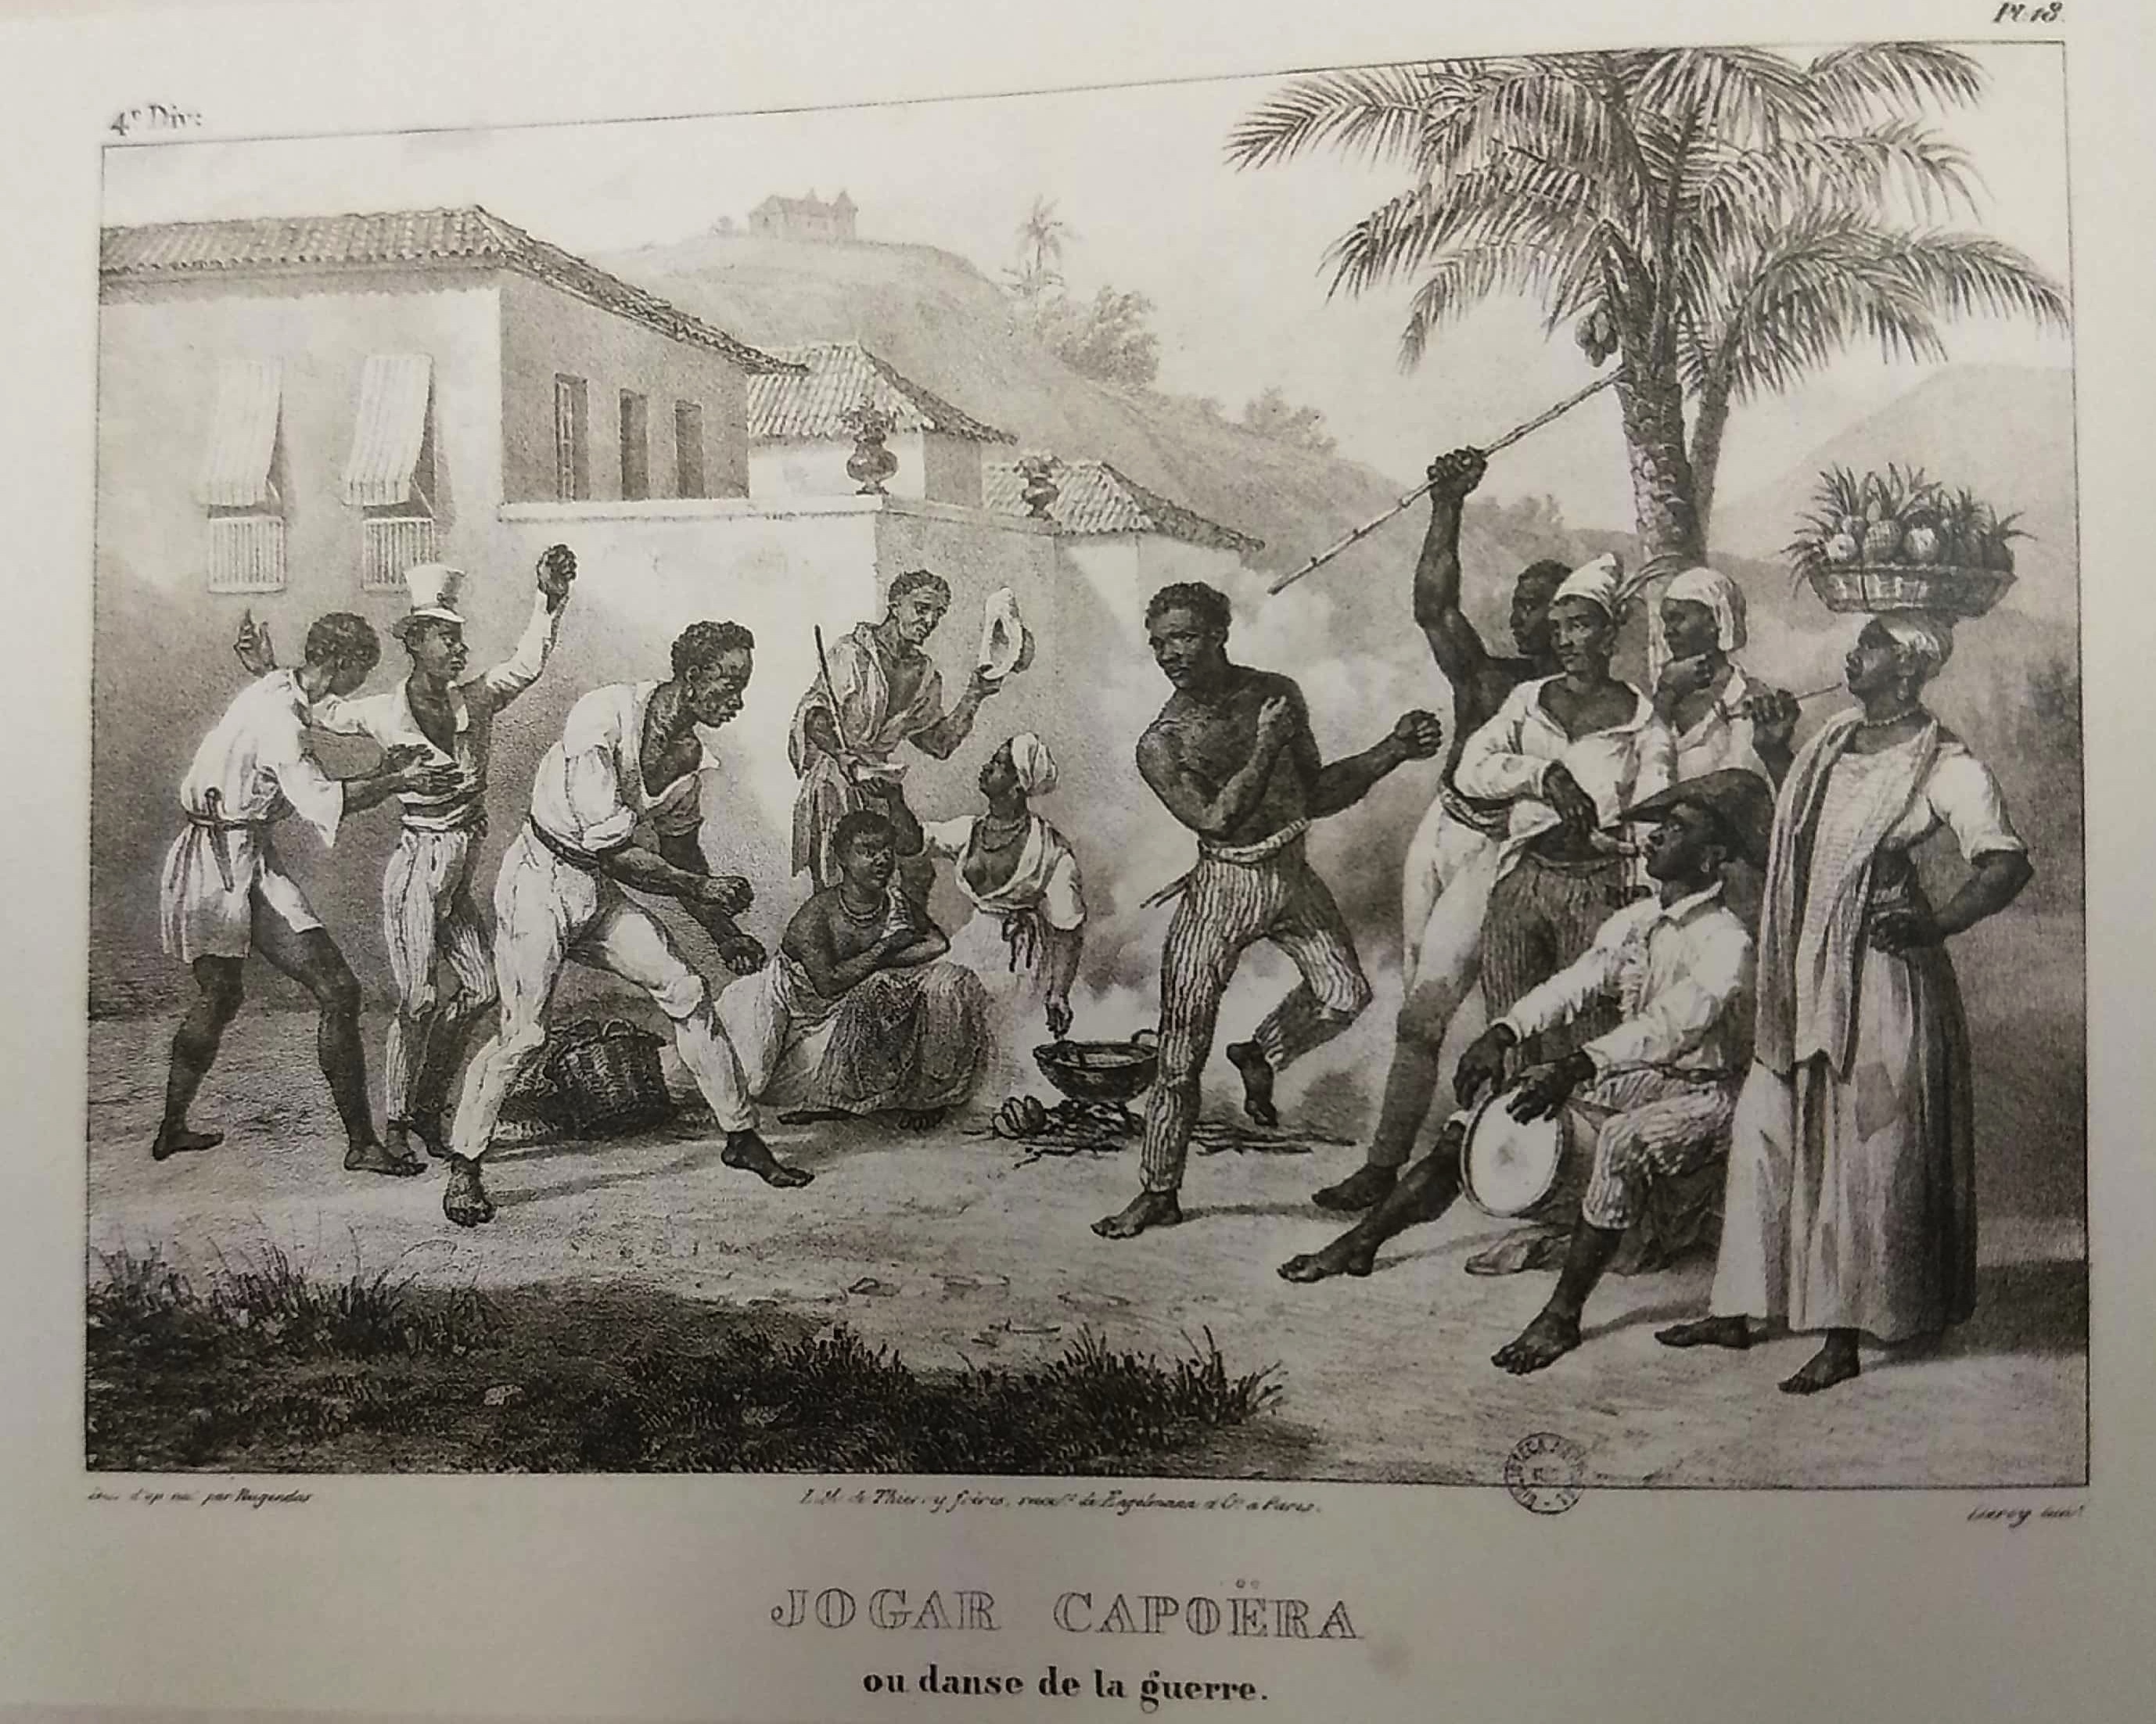 Jogar Capoeira - Rugendas - 1835